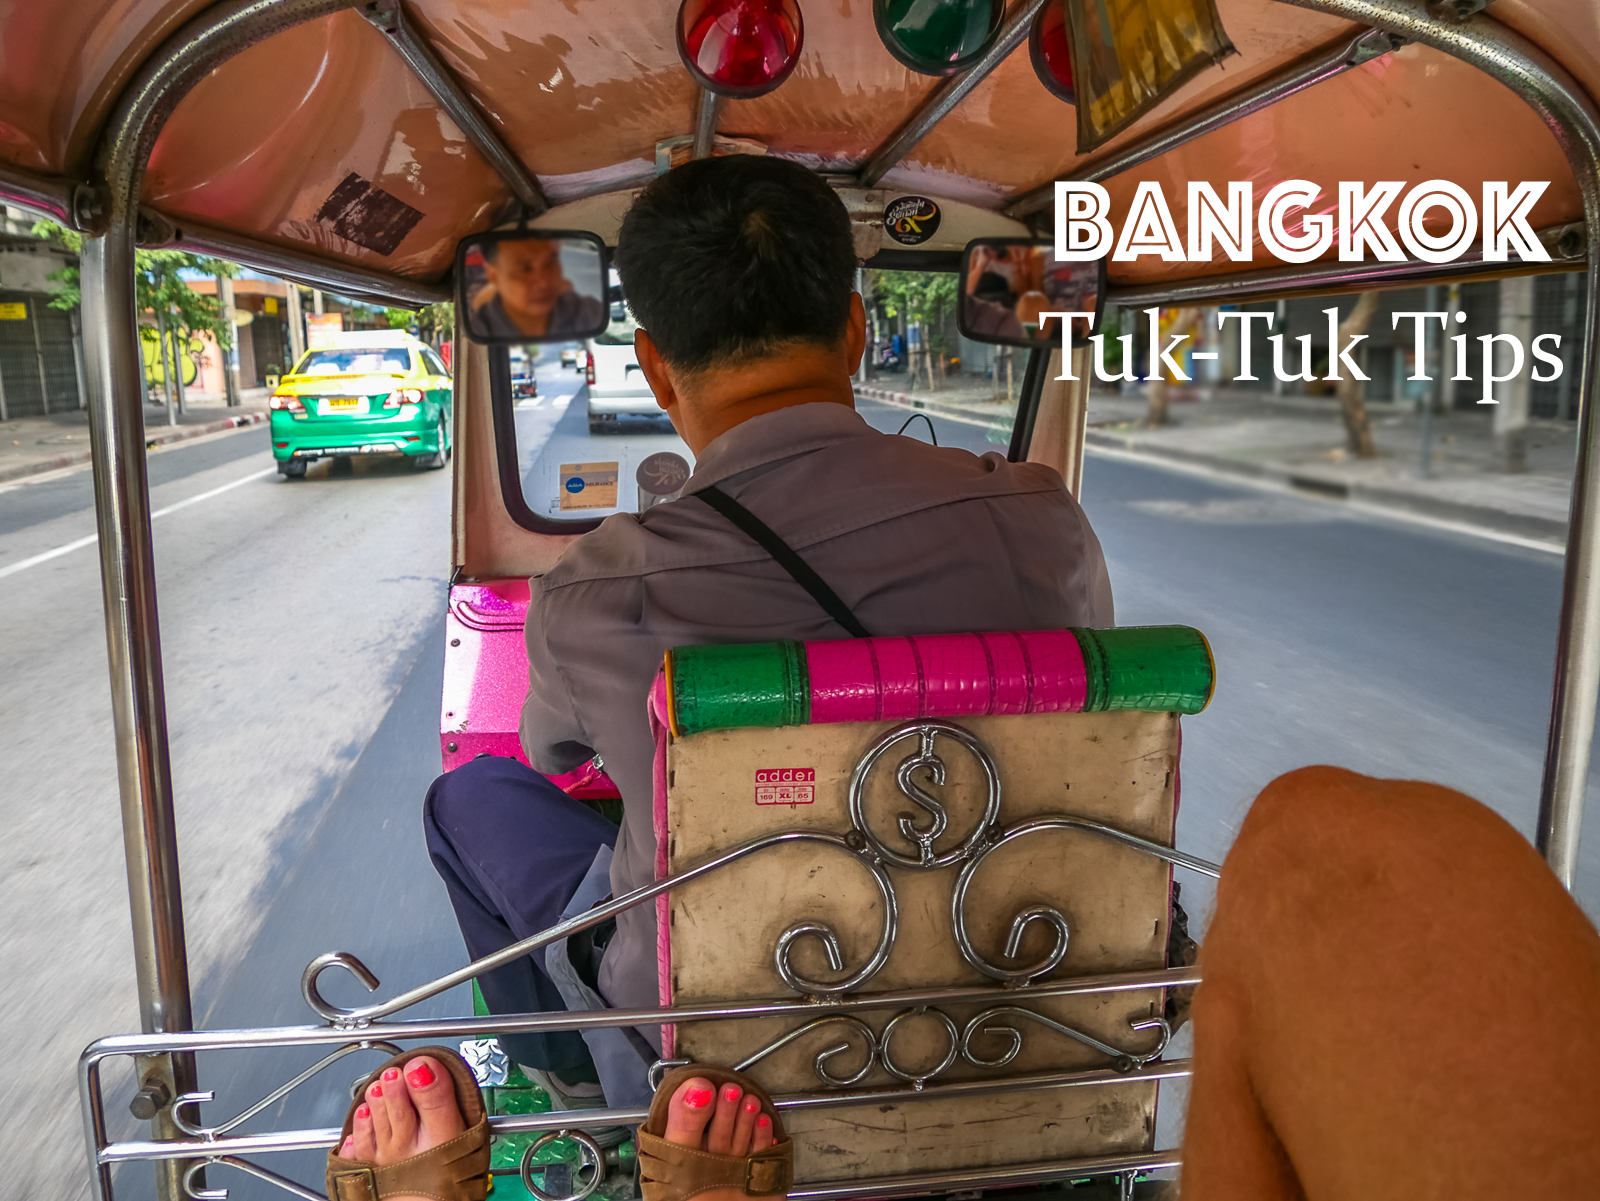 Bangkok Tuk-tuk tips